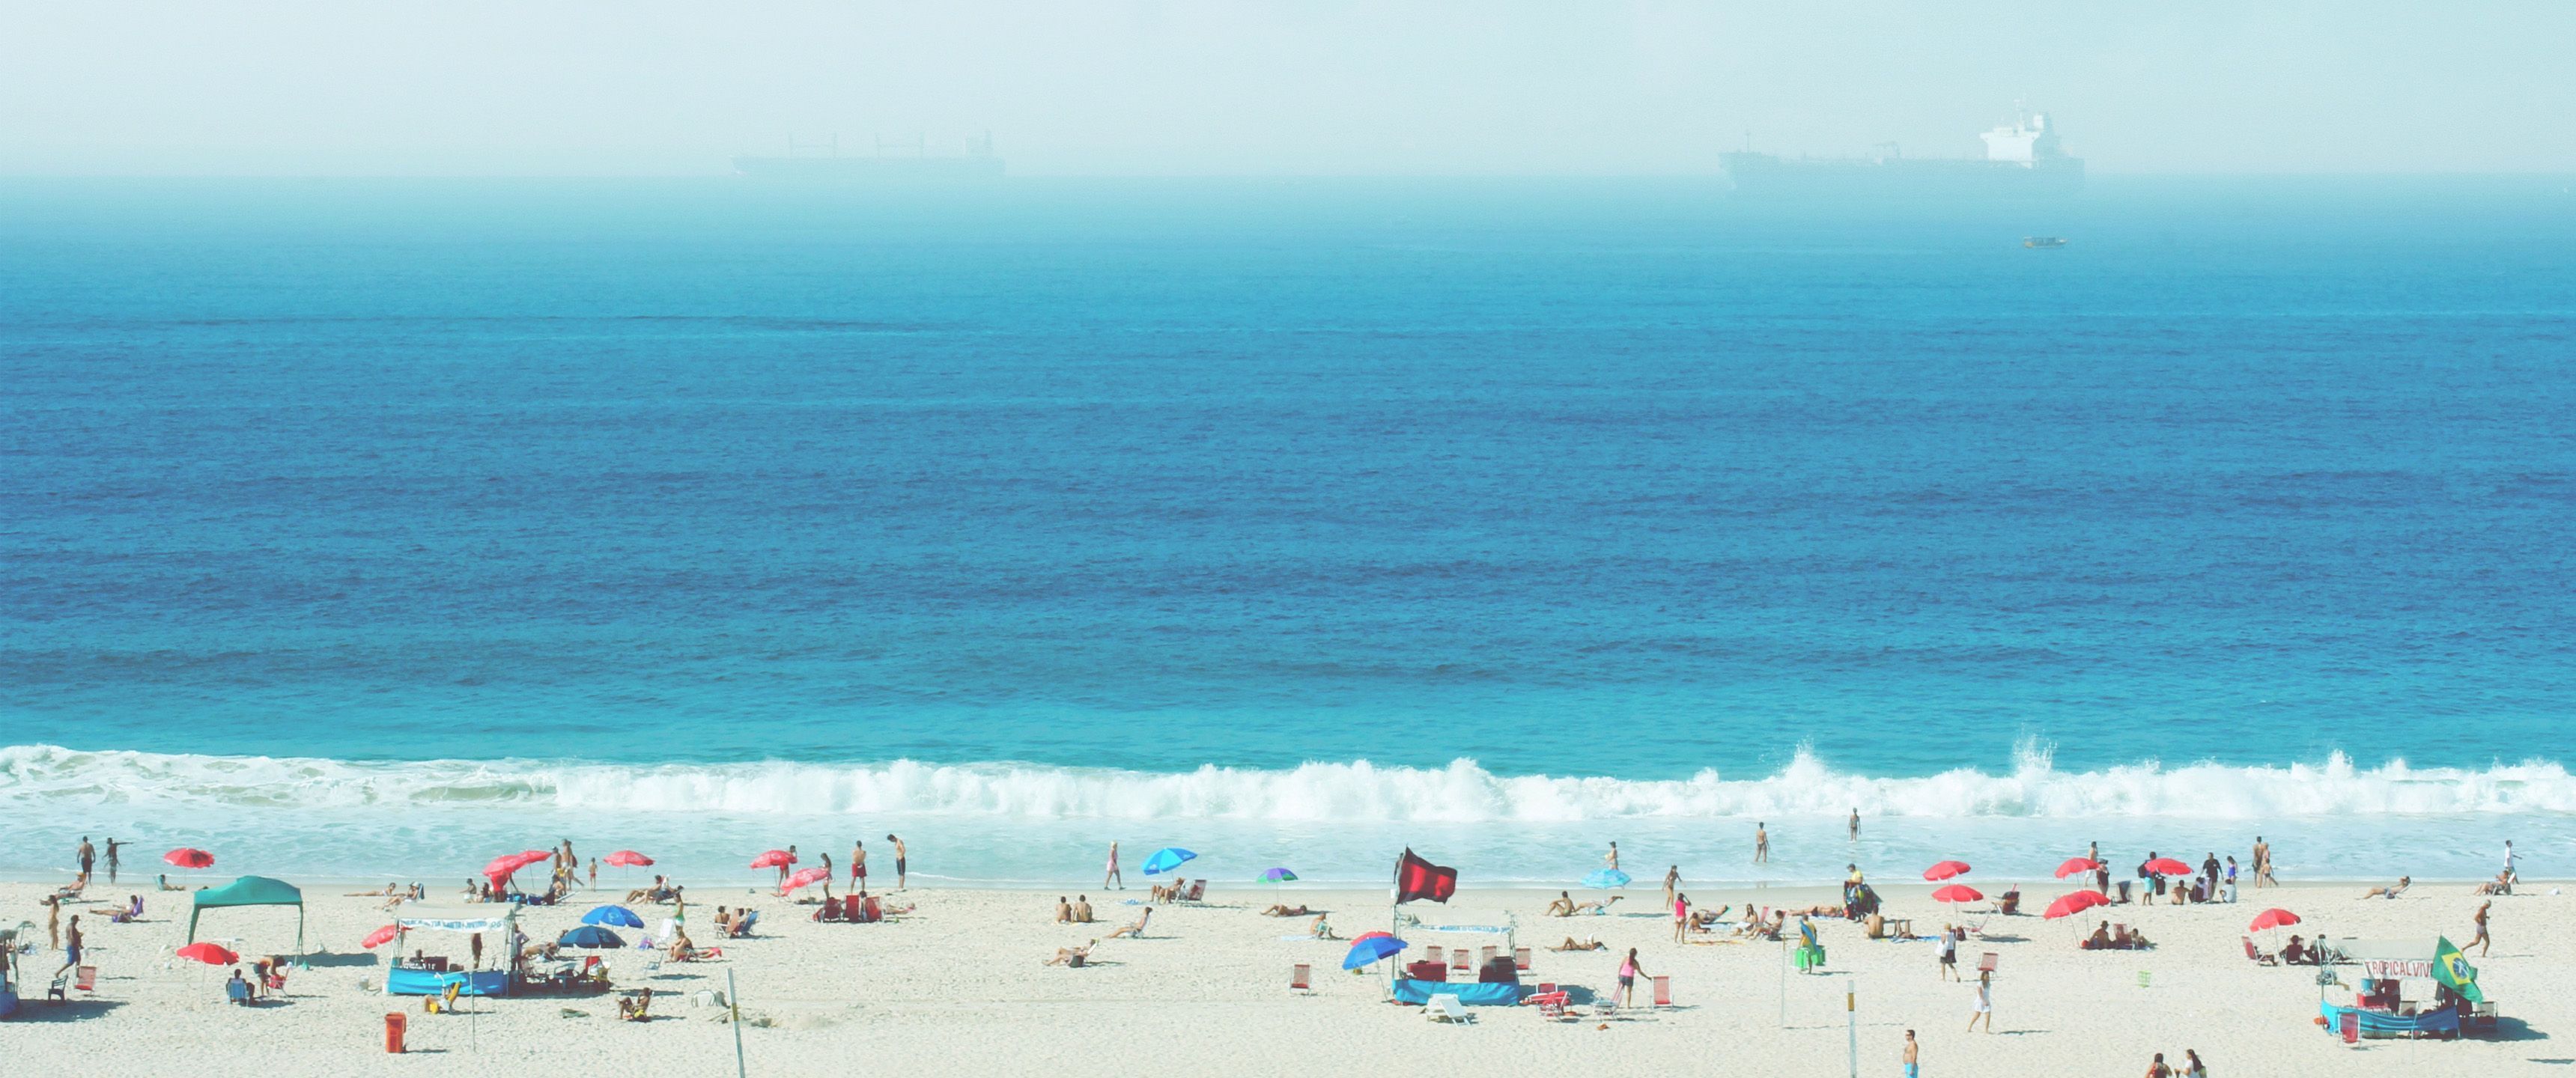 80's Beach:9 Ultrawide HD Wallpaper (3440x1440). 배경, 피부, 배경화면